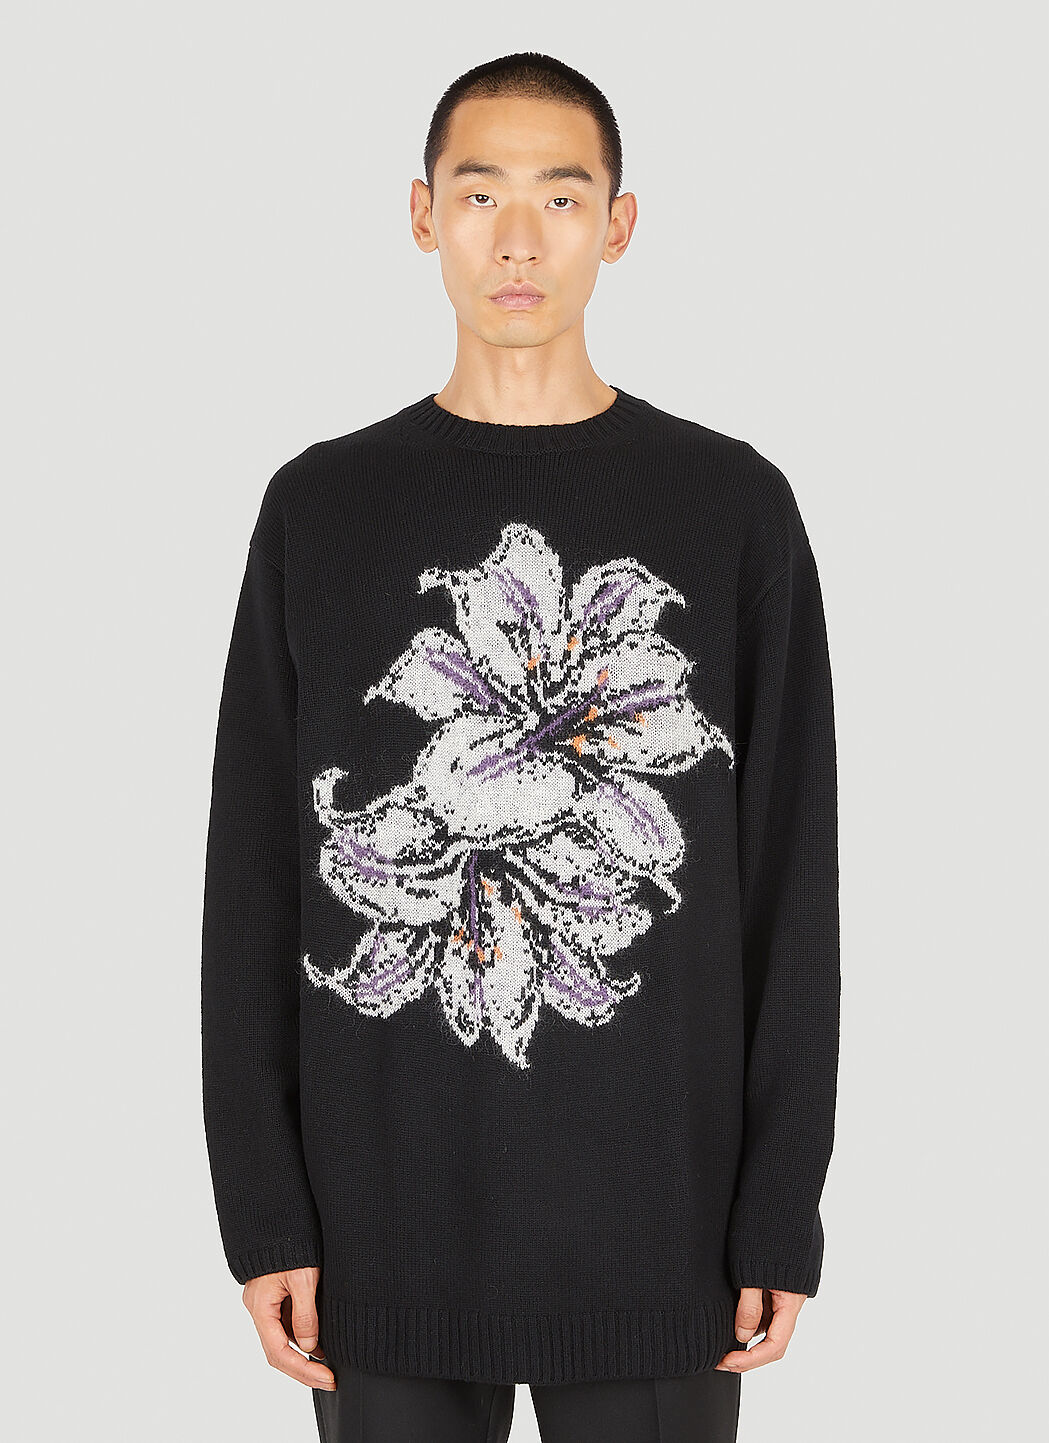 Yohji Yamamoto Intarsia Flower Sweater in Black | LN-CC®